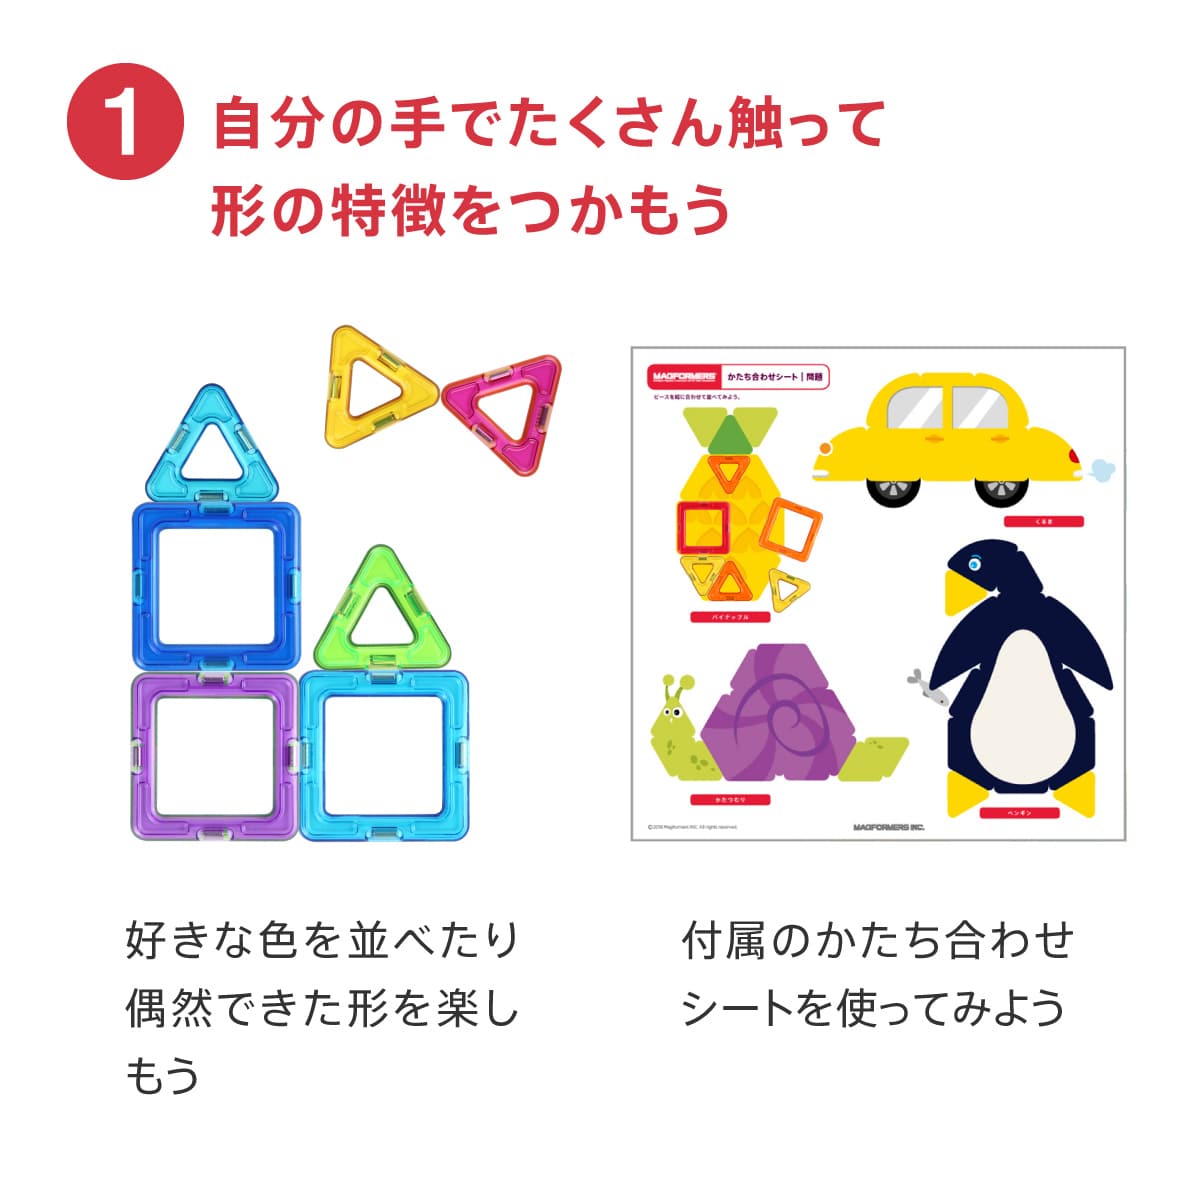 マグ・フォーマー ディスカバリーBOX（71ピース）日本語あそび方冊子付: ボーネルンド  オンラインショップ。世界中の知育玩具など、あそび道具がたくさん。0歳からのお子様へのプレゼントにも。